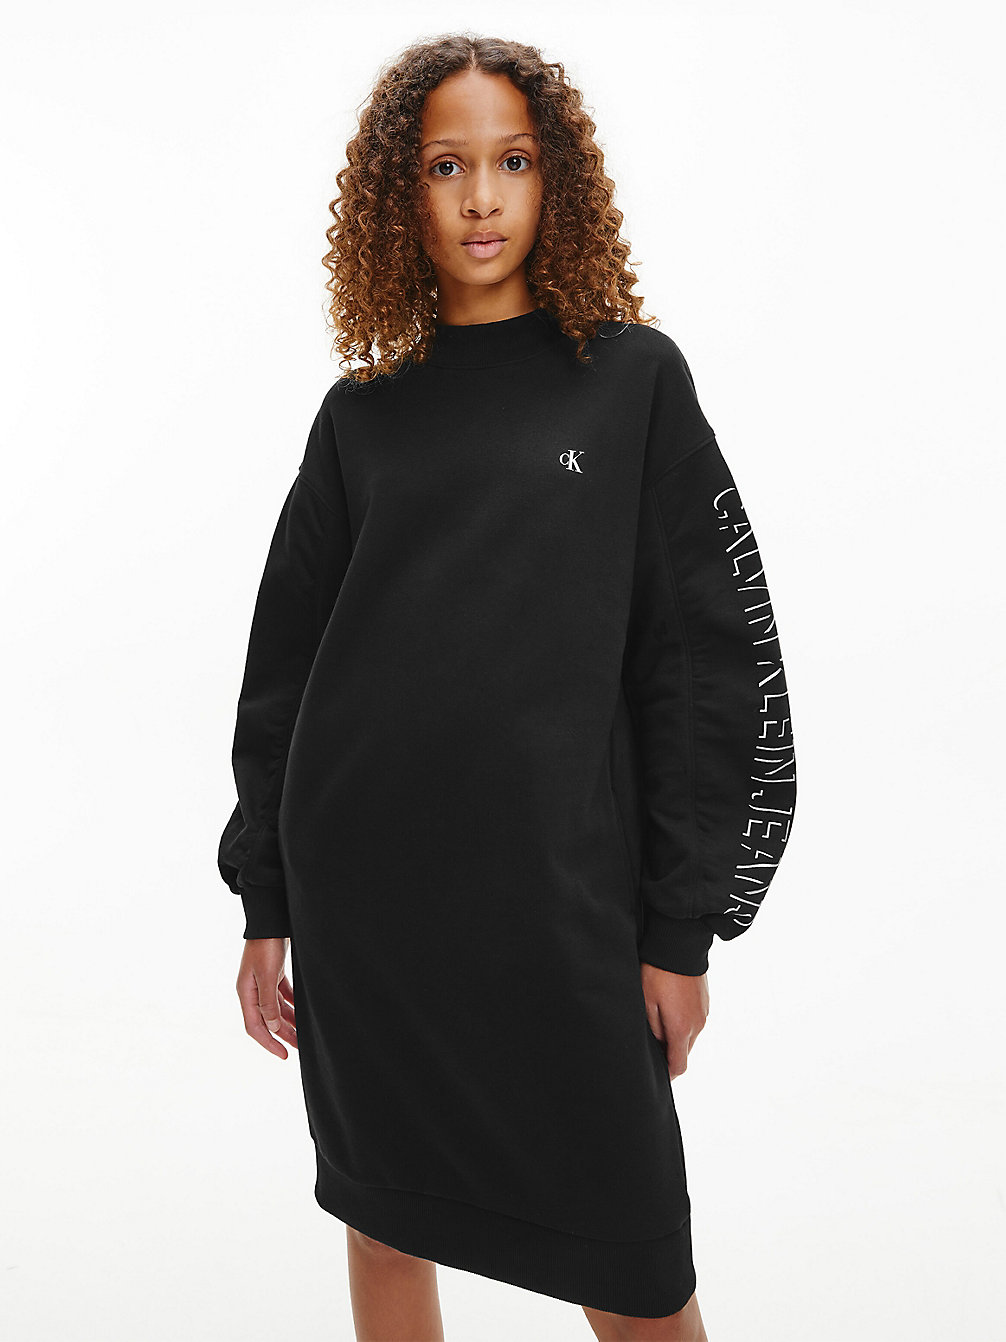 CK BLACK Oversized Organic Cotton Sweatshirt Dress undefined girls Calvin Klein